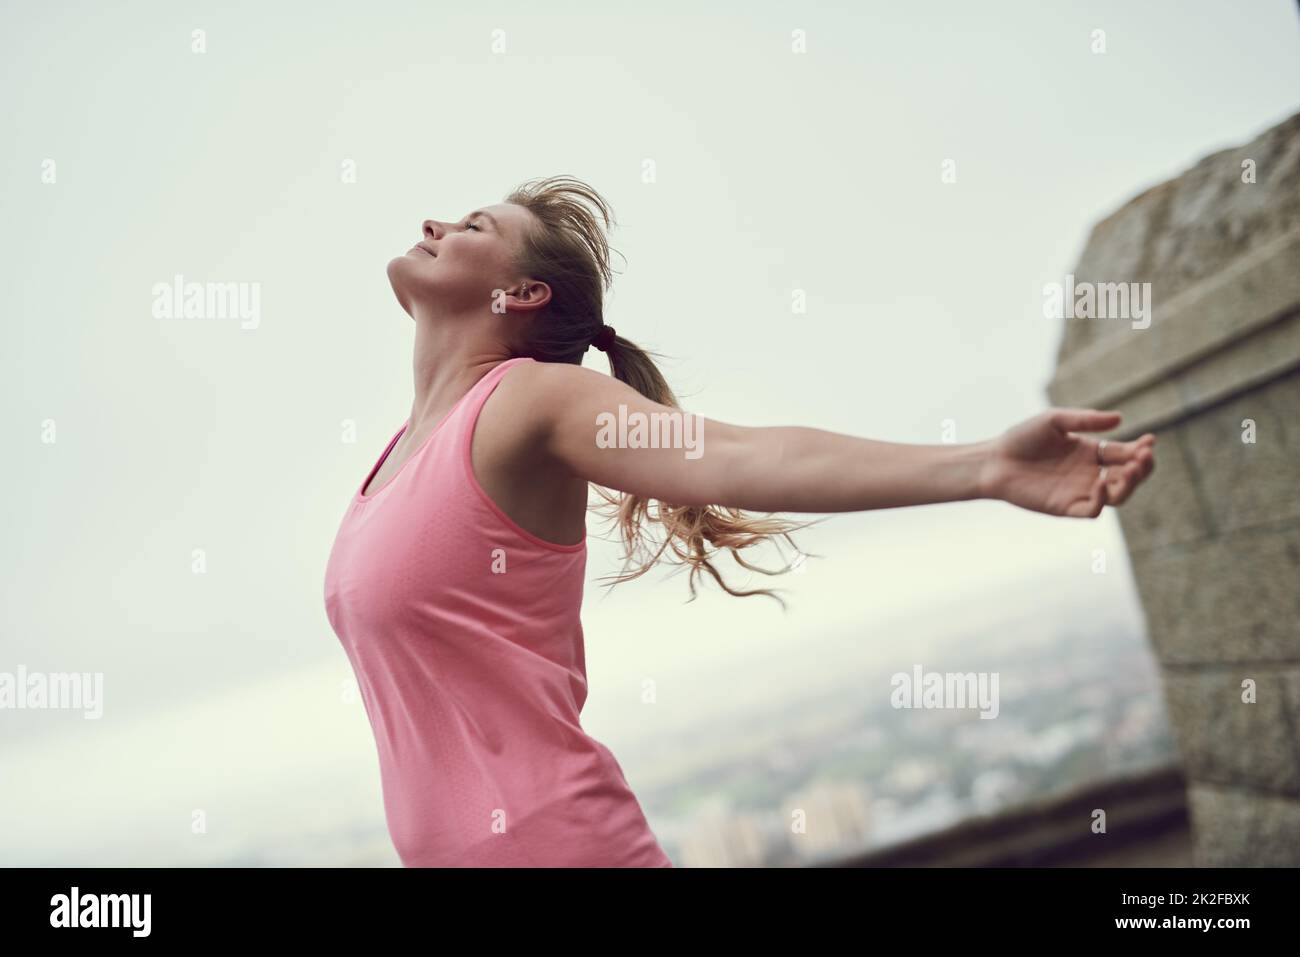 Nichts fühlt sich besser an als Fitness. Aufnahme einer glücklichen jungen Frau, die sich während eines Laufs in der Stadt frei fühlt. Stockfoto